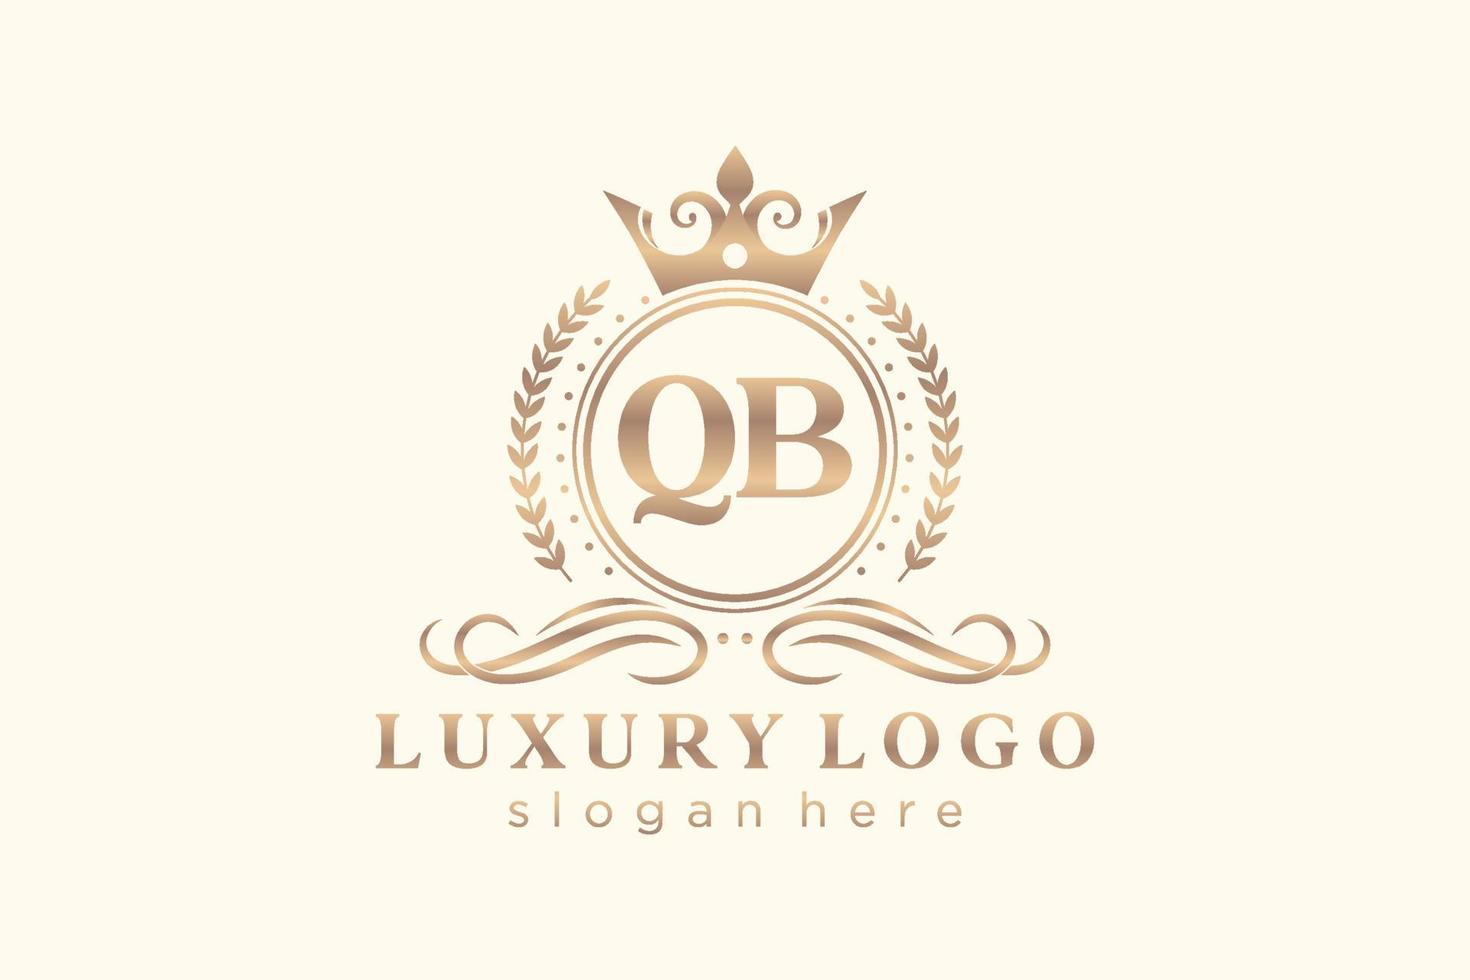 Royal Luxury Logo-Vorlage mit anfänglichem qb-Buchstaben in Vektorgrafiken für Restaurant, Lizenzgebühren, Boutique, Café, Hotel, Heraldik, Schmuck, Mode und andere Vektorillustrationen. vektor